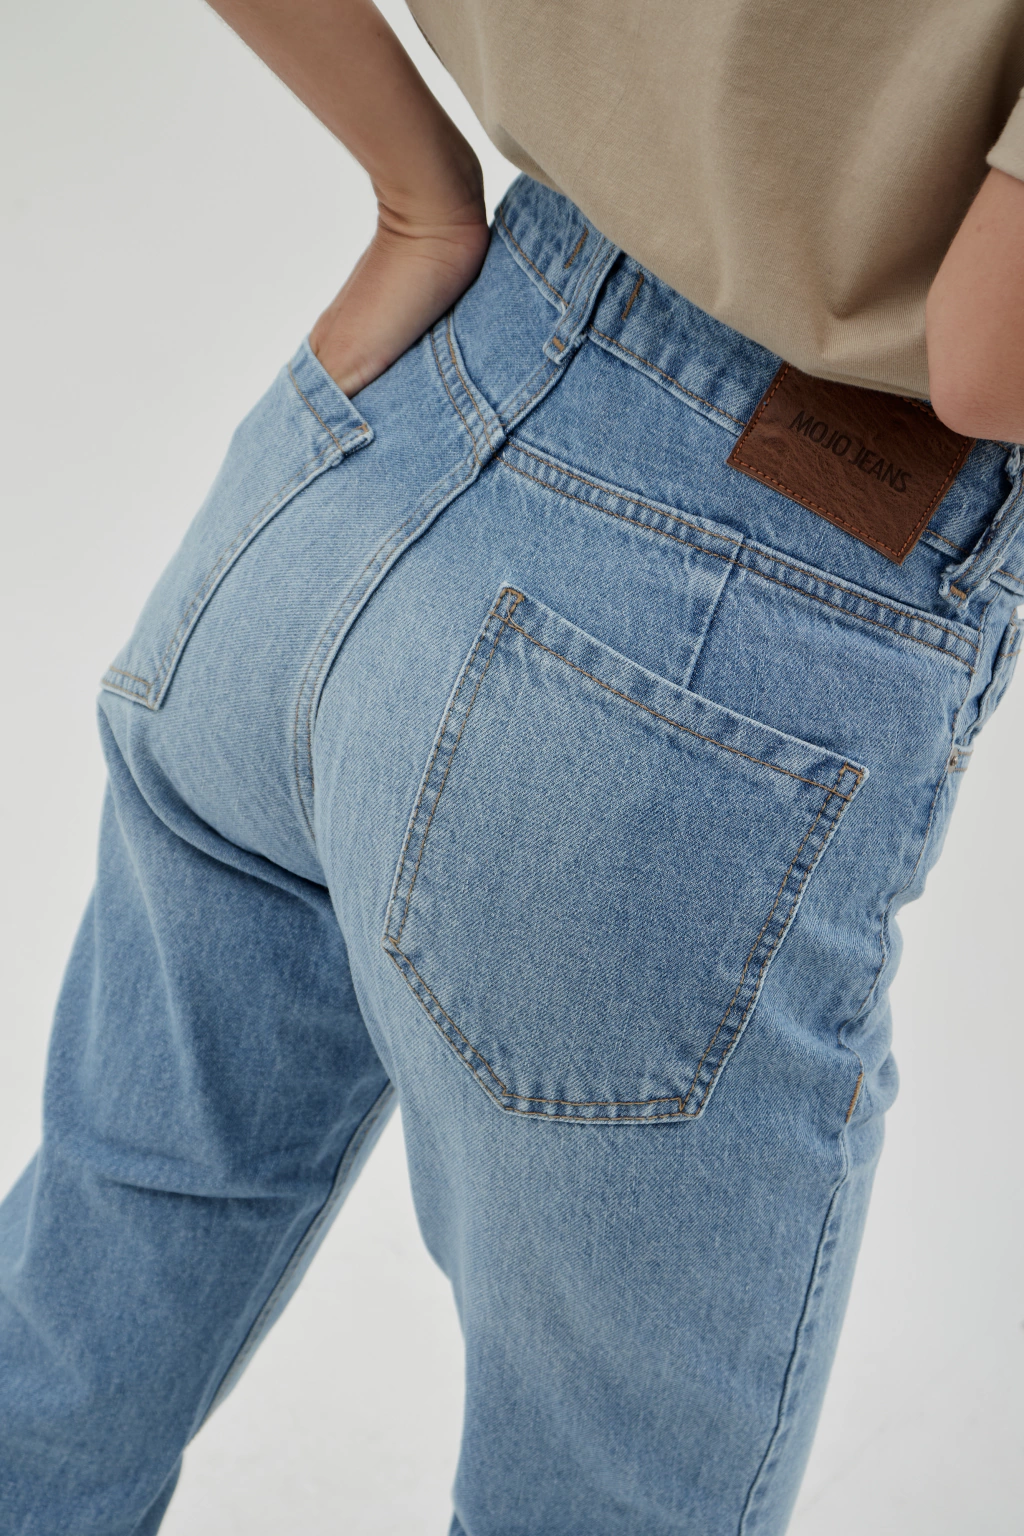 JEAN LAIA - Comprar en Mojo Jeans